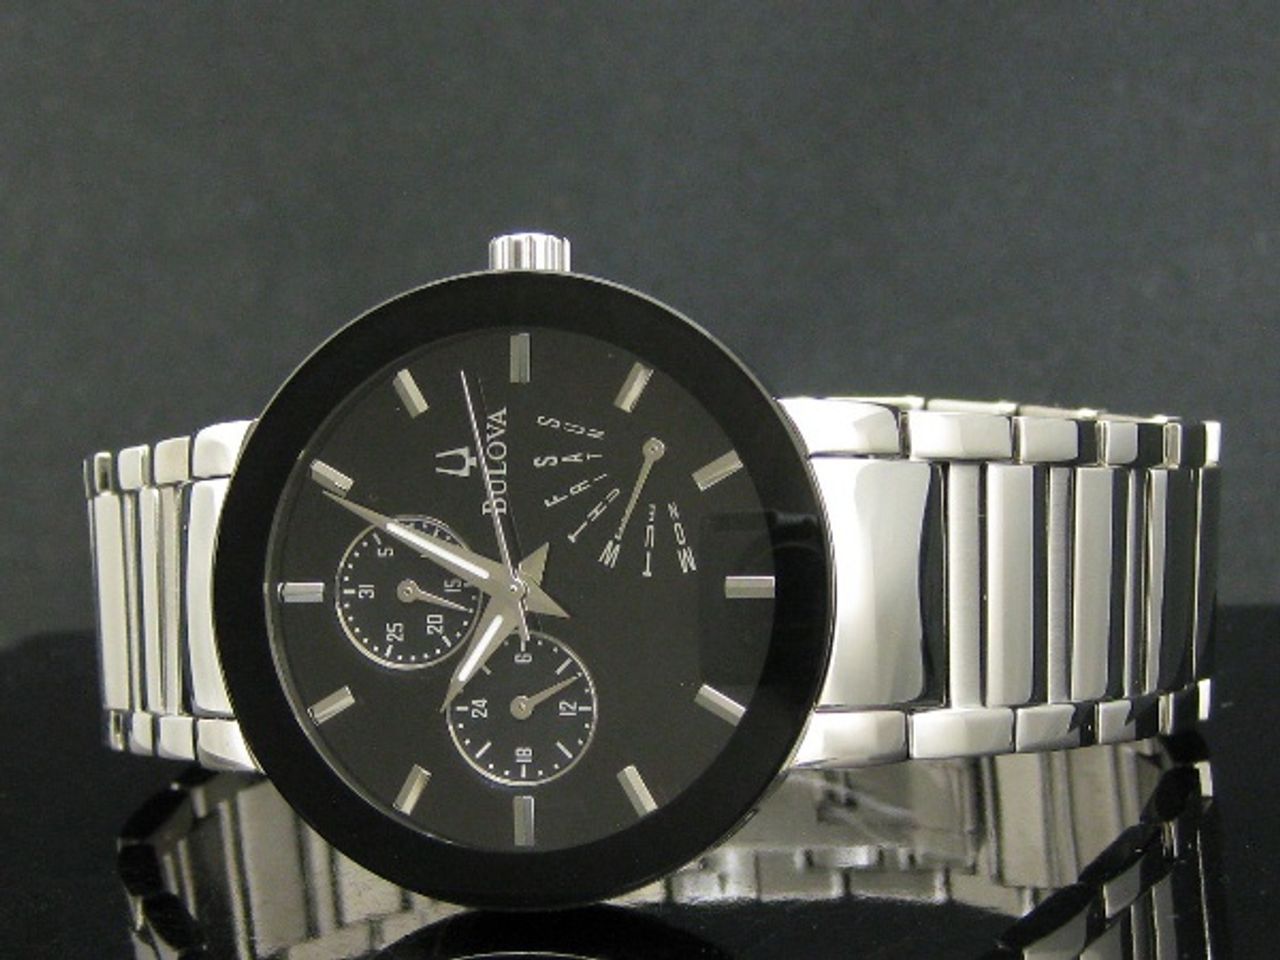 Dây đồng hồ mạ bạc sáng bóng kết hợp hoàn hảo với mặt số giúp chiếc đồng hồ trở nên lịch lãm hơn